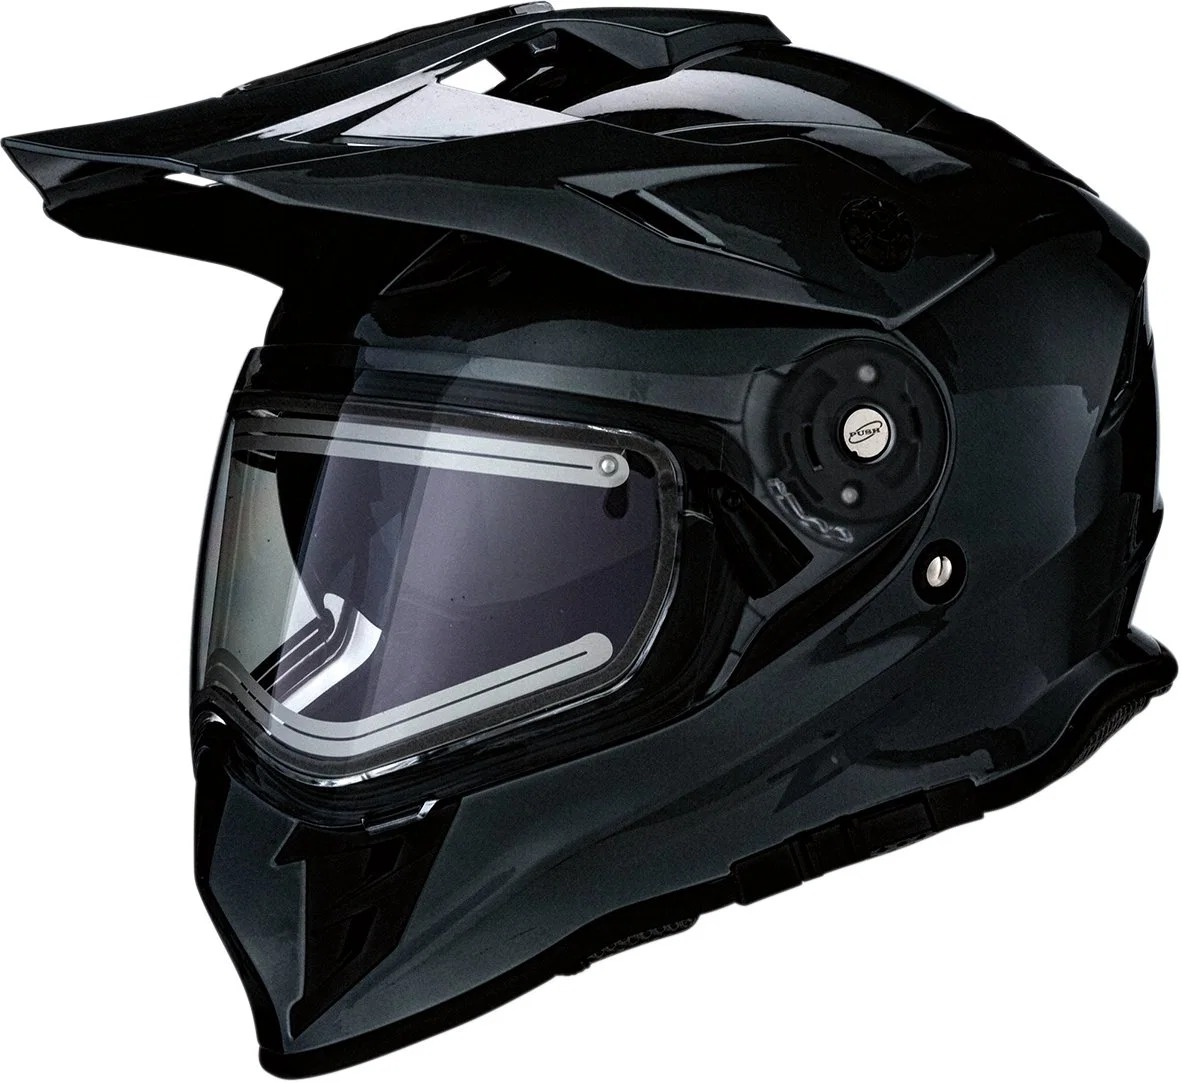 Casque intégral pour moto et motoneige homologué ECE DOT avec visière électrique anti-buée pour motocross et quad.